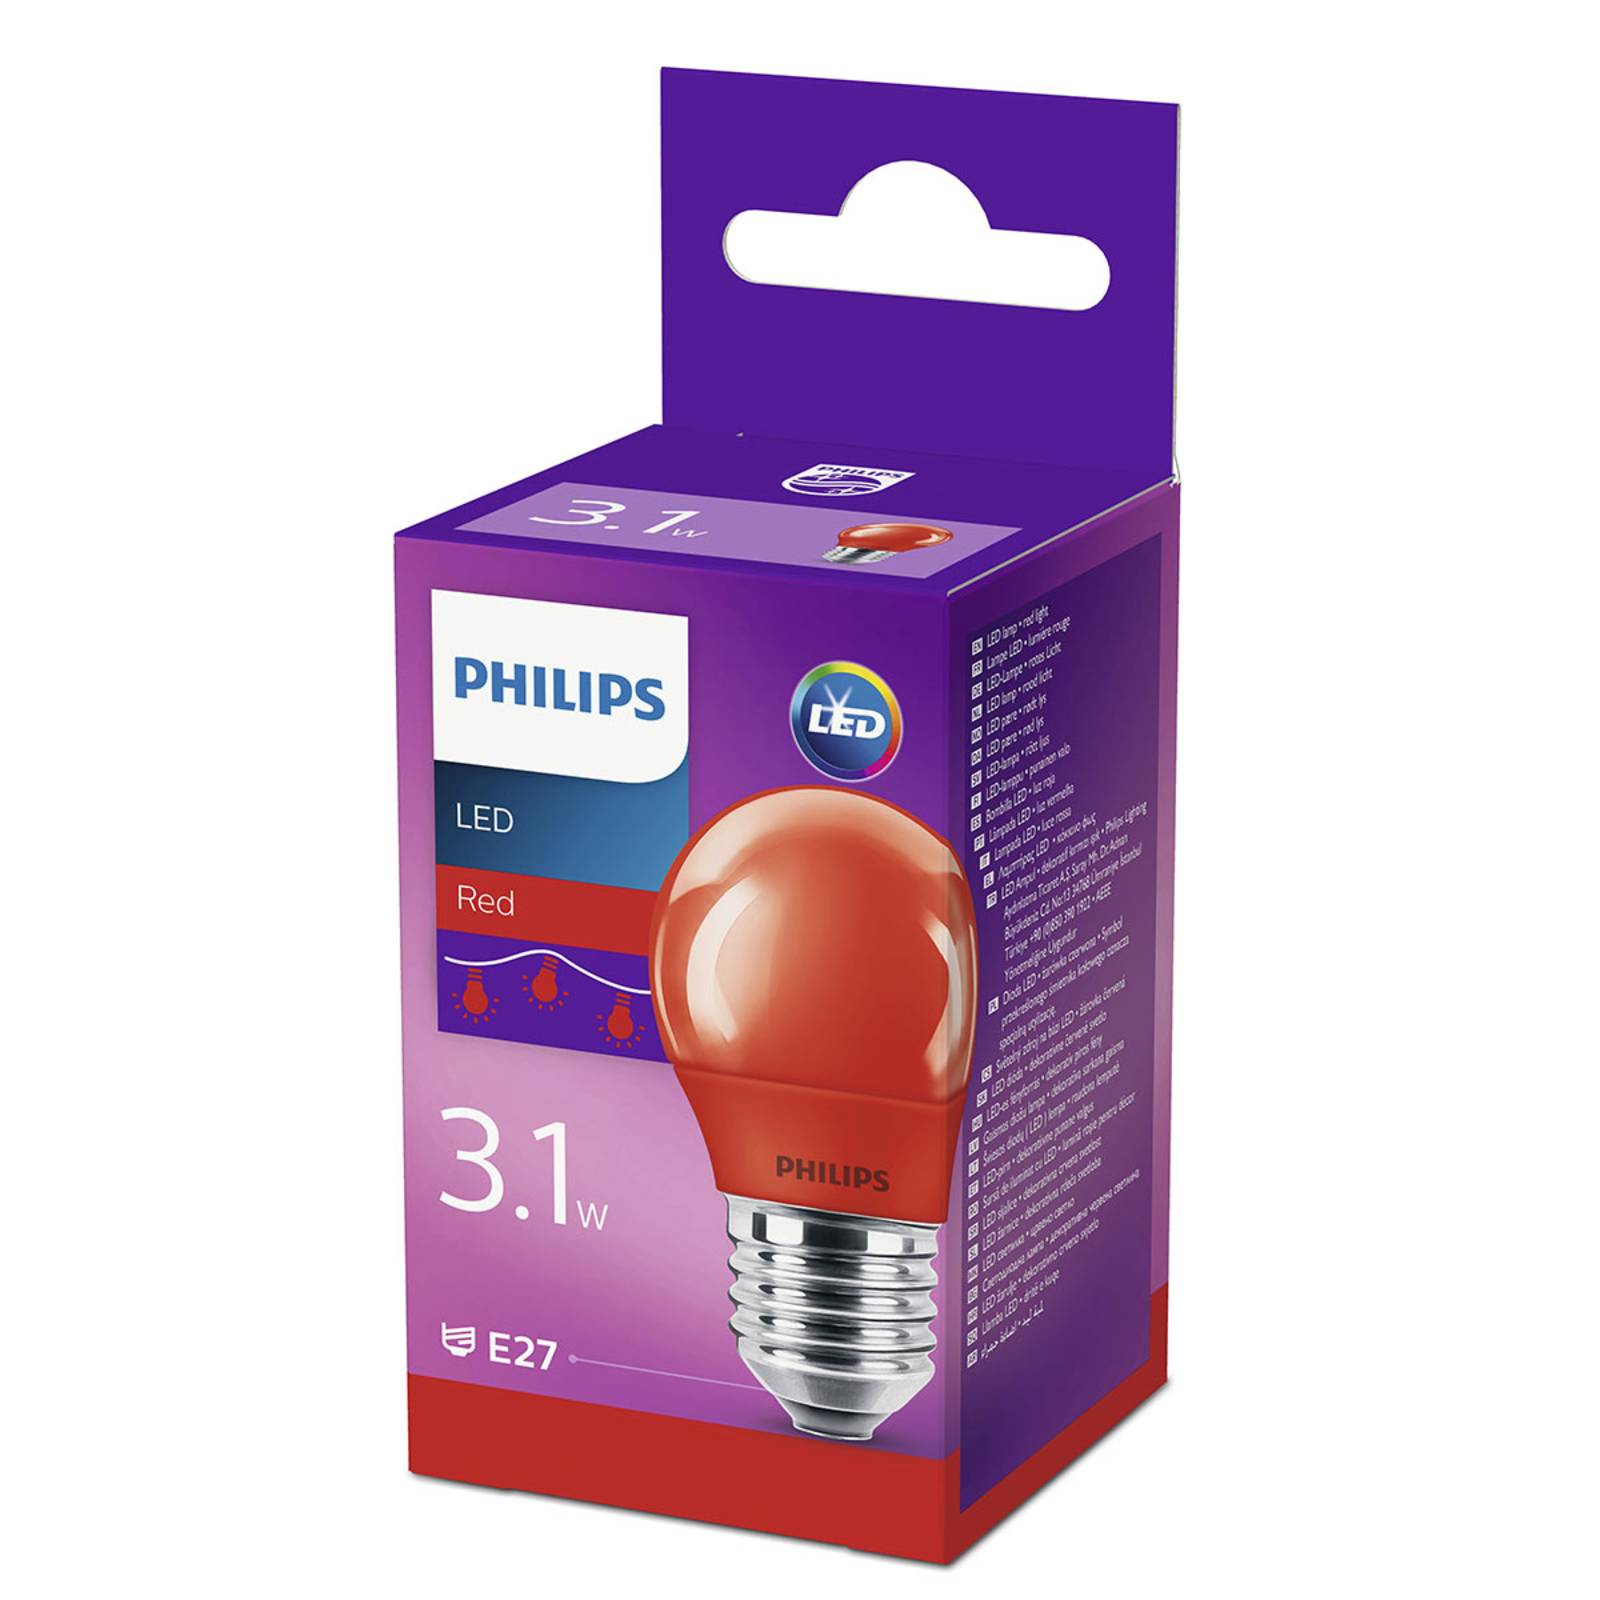 Zdjęcia - Żarówka Philips  LED E27 P45 3,1W, czerwona 